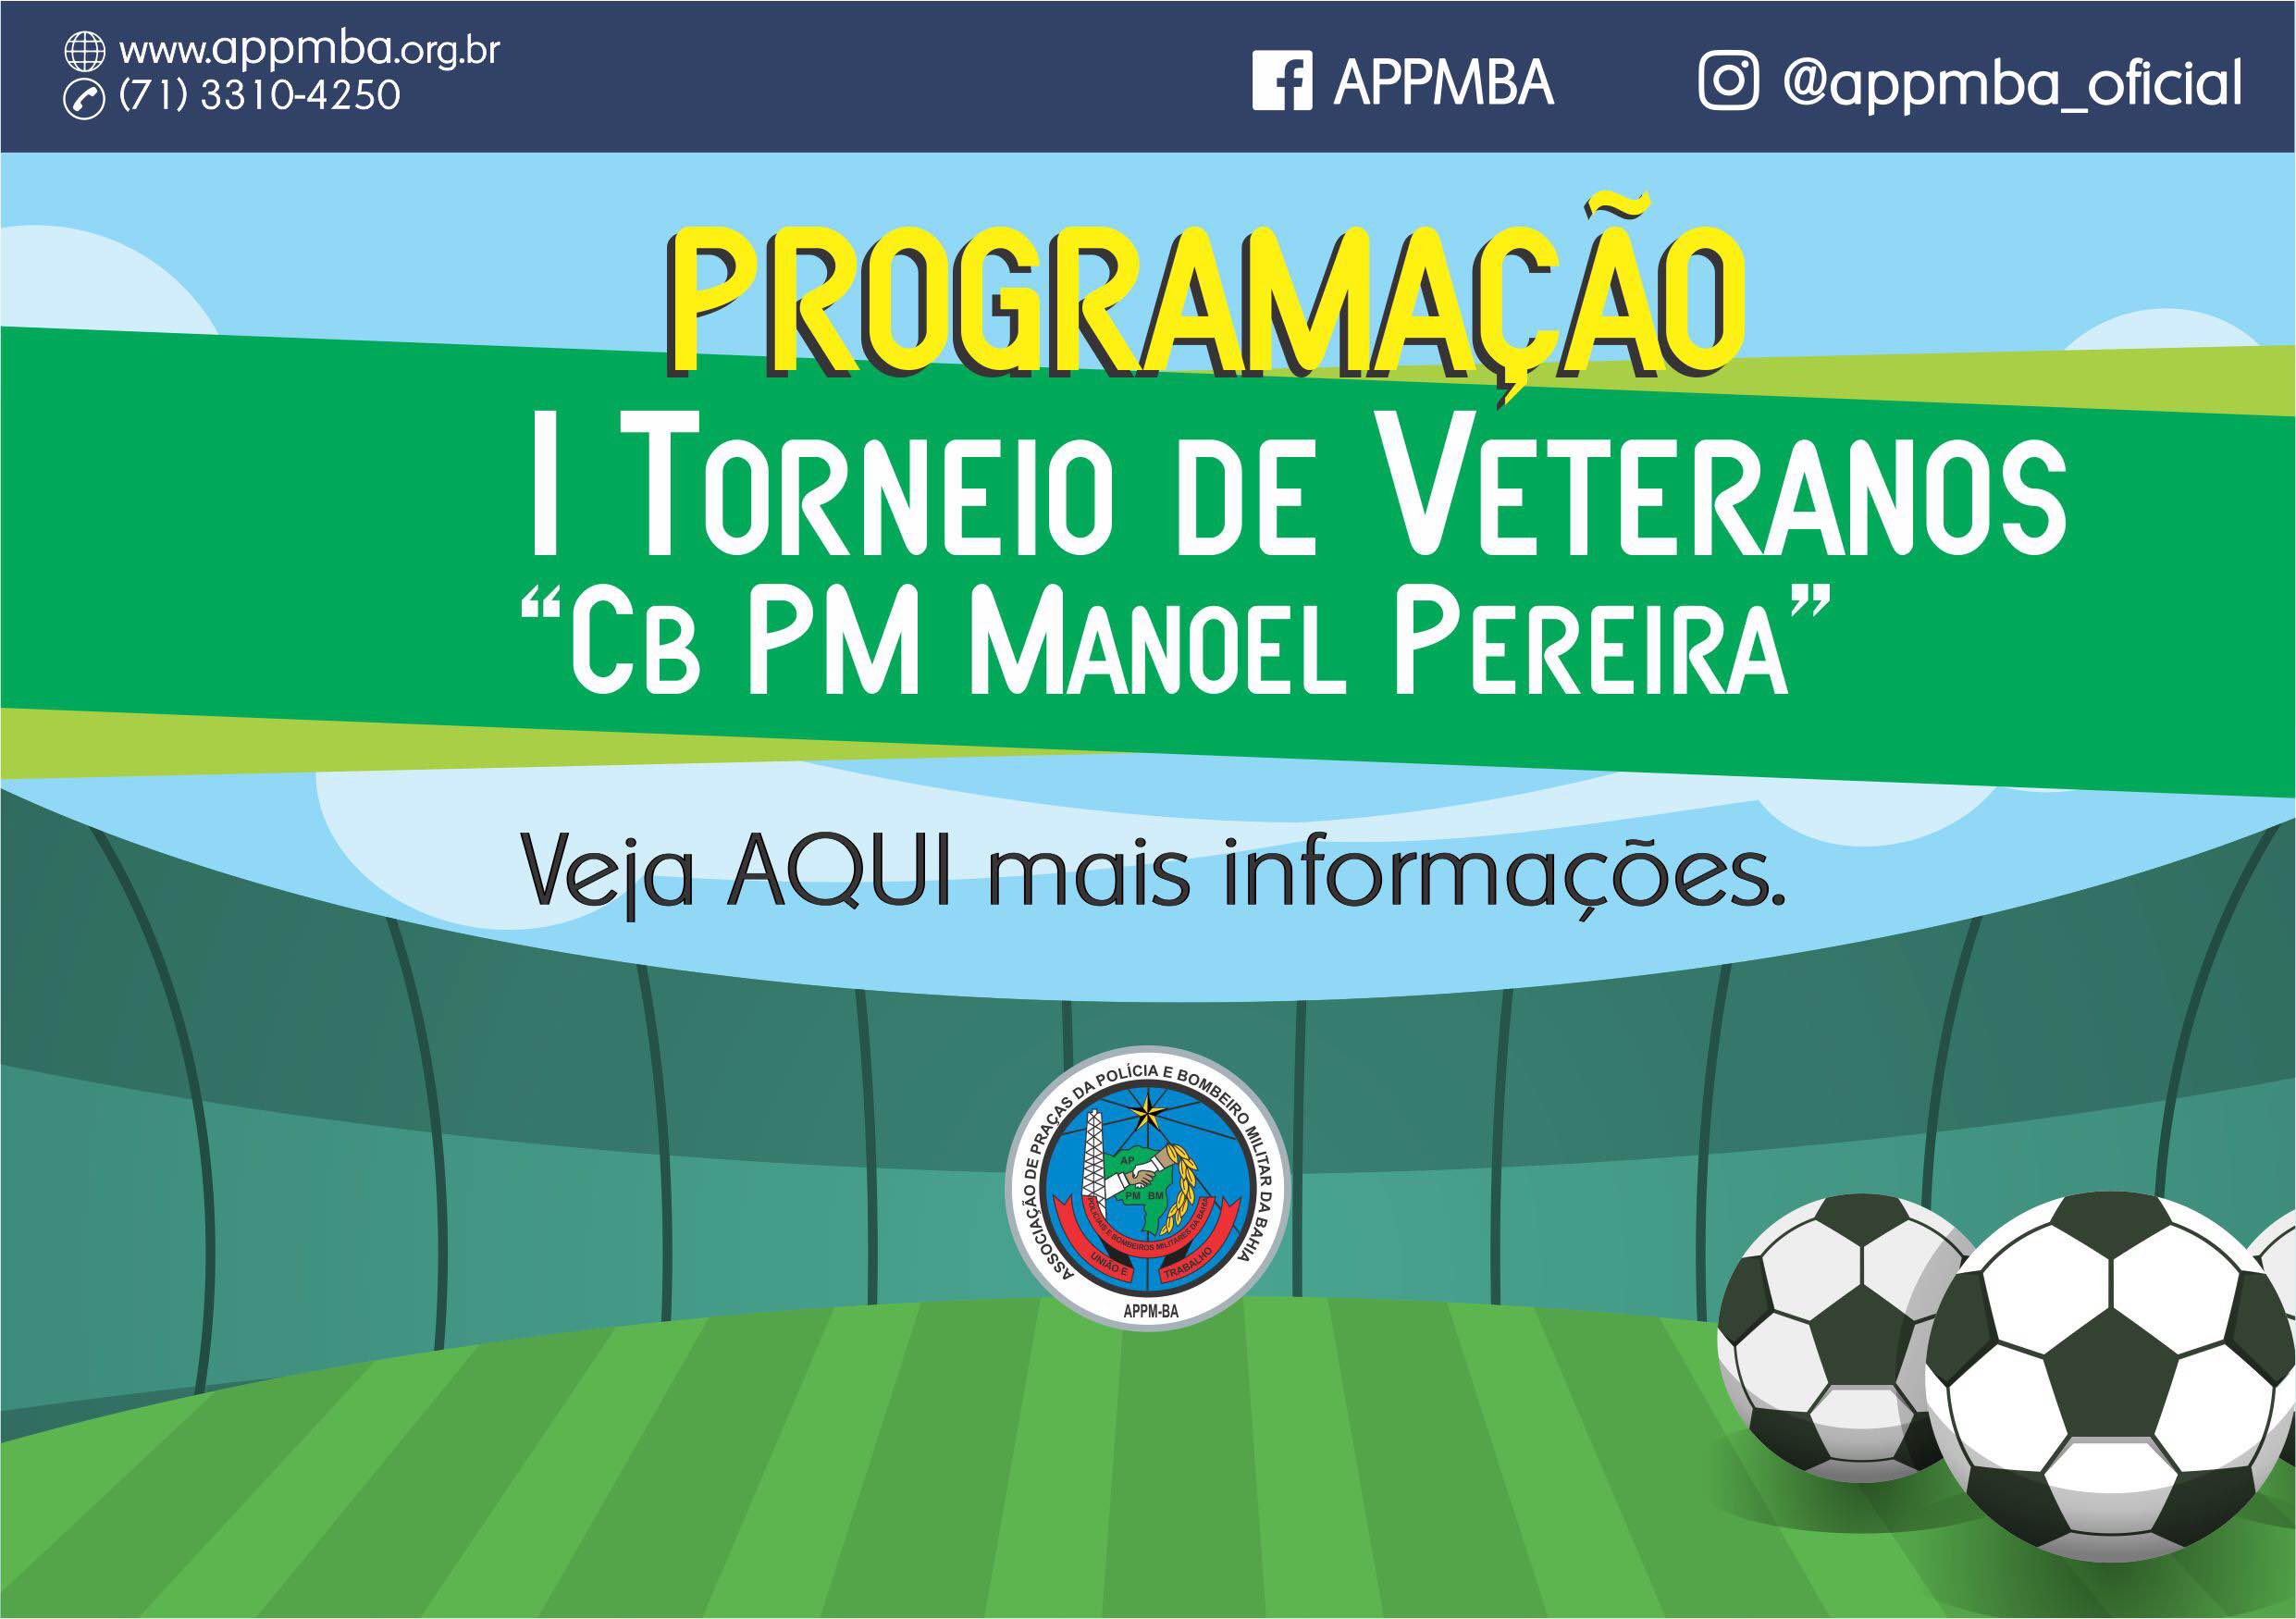 Programação I Torneio de Veteranos Cb PM Manoel Pereira